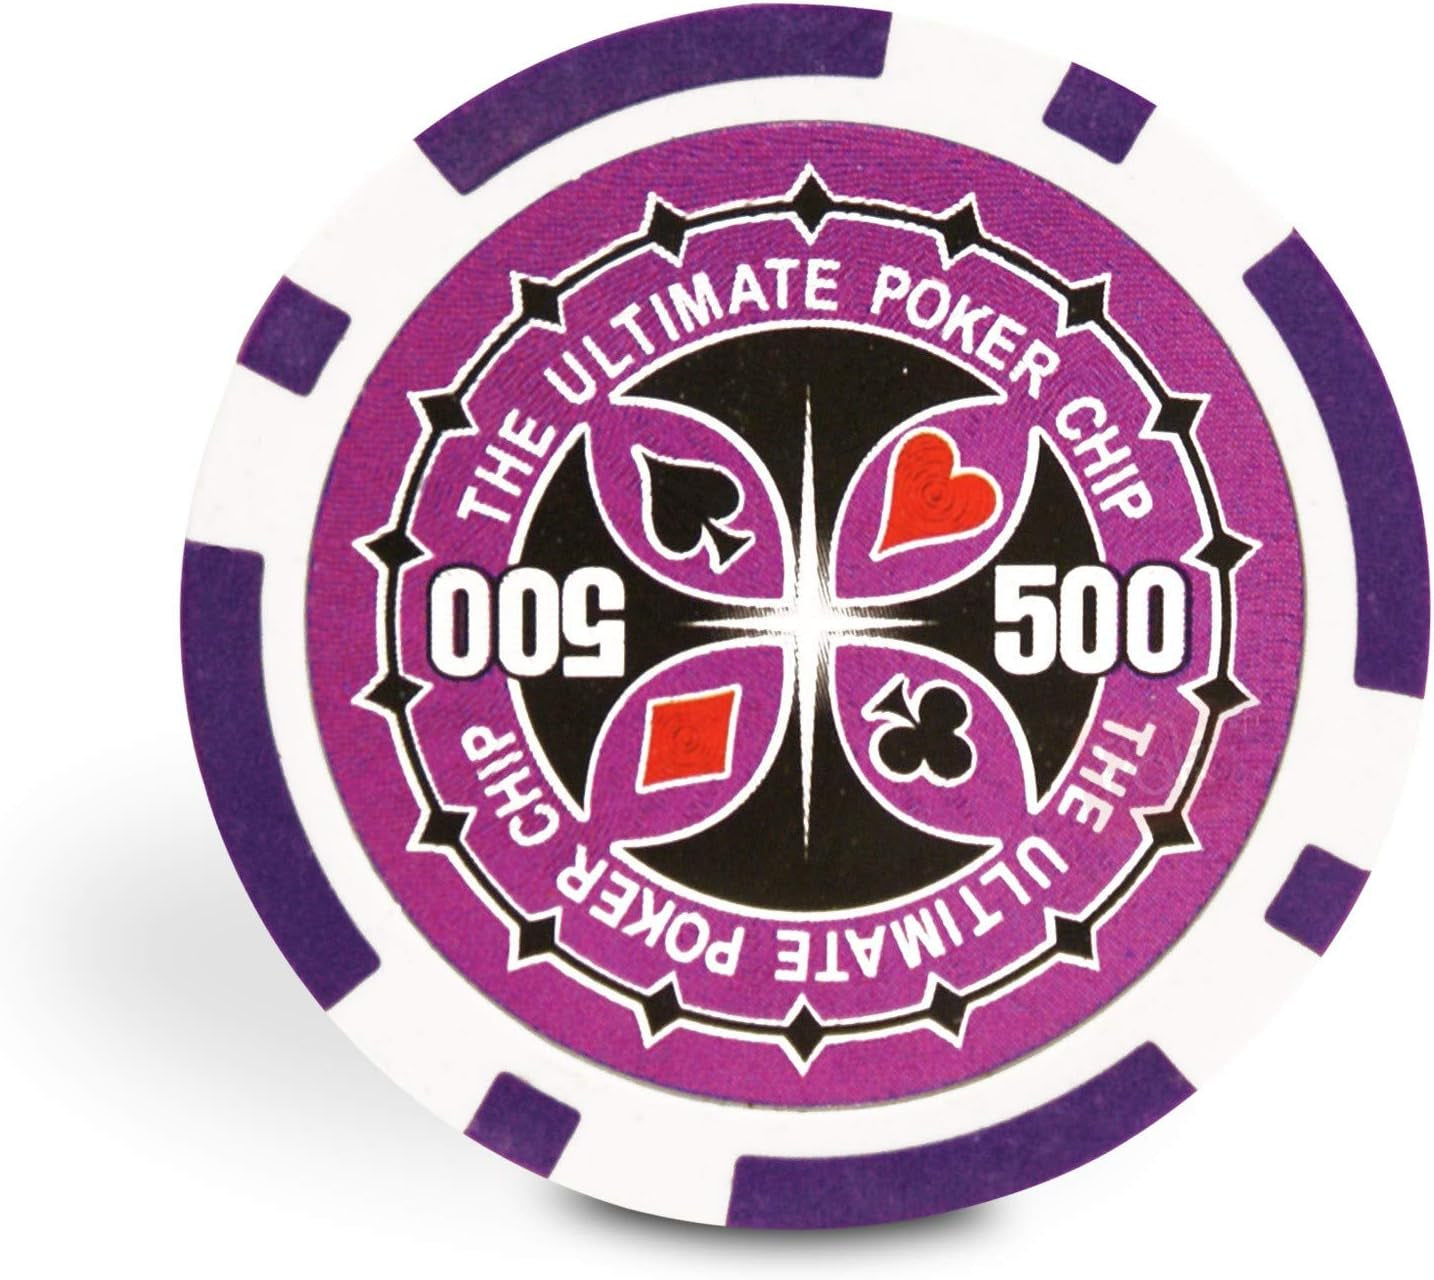 Malette Poker 500 Jetons Ultimate Poker Chips + 2 Jeux De Cartes + Bouton Dealer - Poker Set De 500 Jeton De Poker Ultimate (Avec Valeur) - Jeu De Poker Avec 500 Jetons De Poker - Mallette Poker